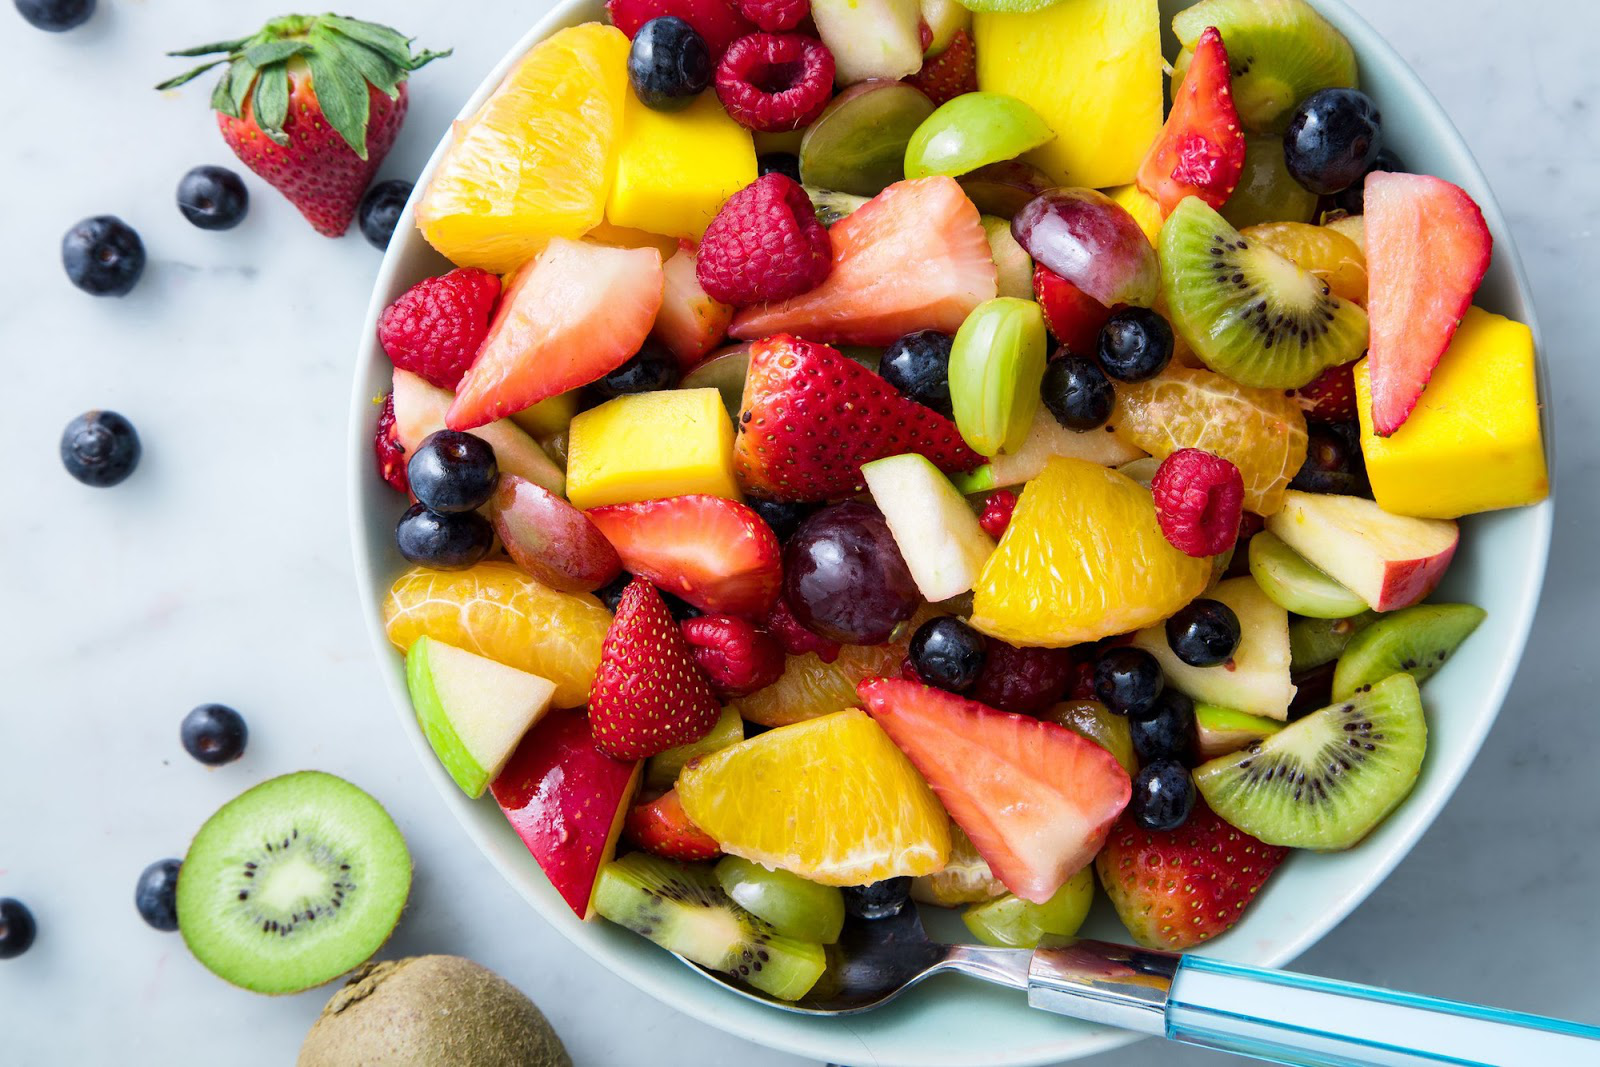 Hiệu quả của việc ăn hoa quả trong việc giảm triệu chứng và nguy cơ tái phát bệnh gout?
